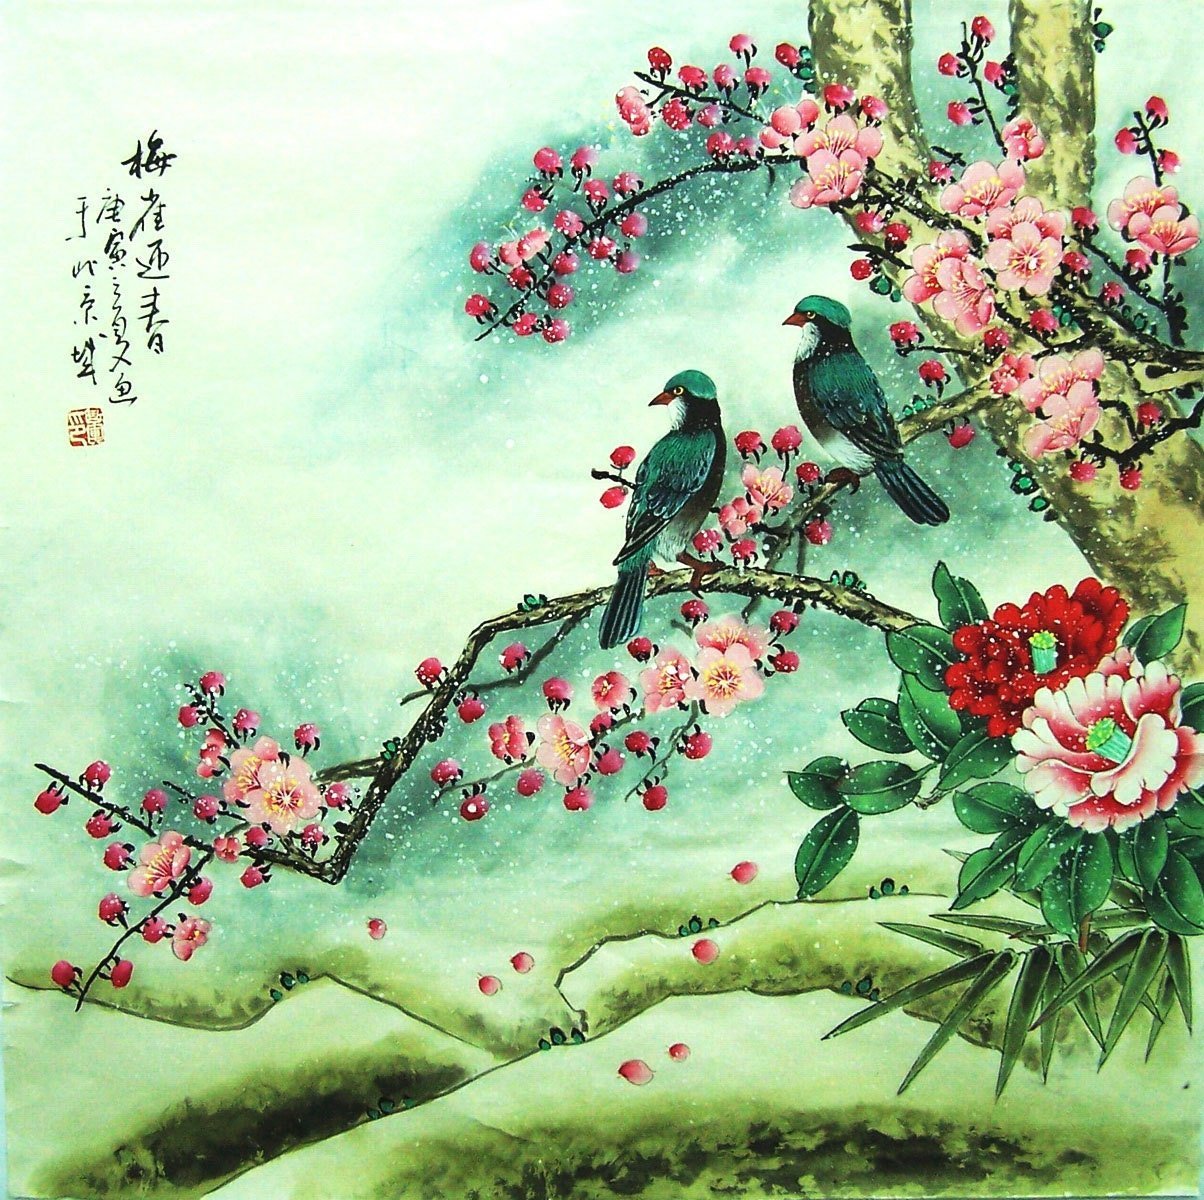 16 коробок серых птичек на китайском. Хуа Няо картины. Хуа Няо Китай. Хуа Няо Жанр китайской живописи. Живопись древнего Китая Хуа Няо.